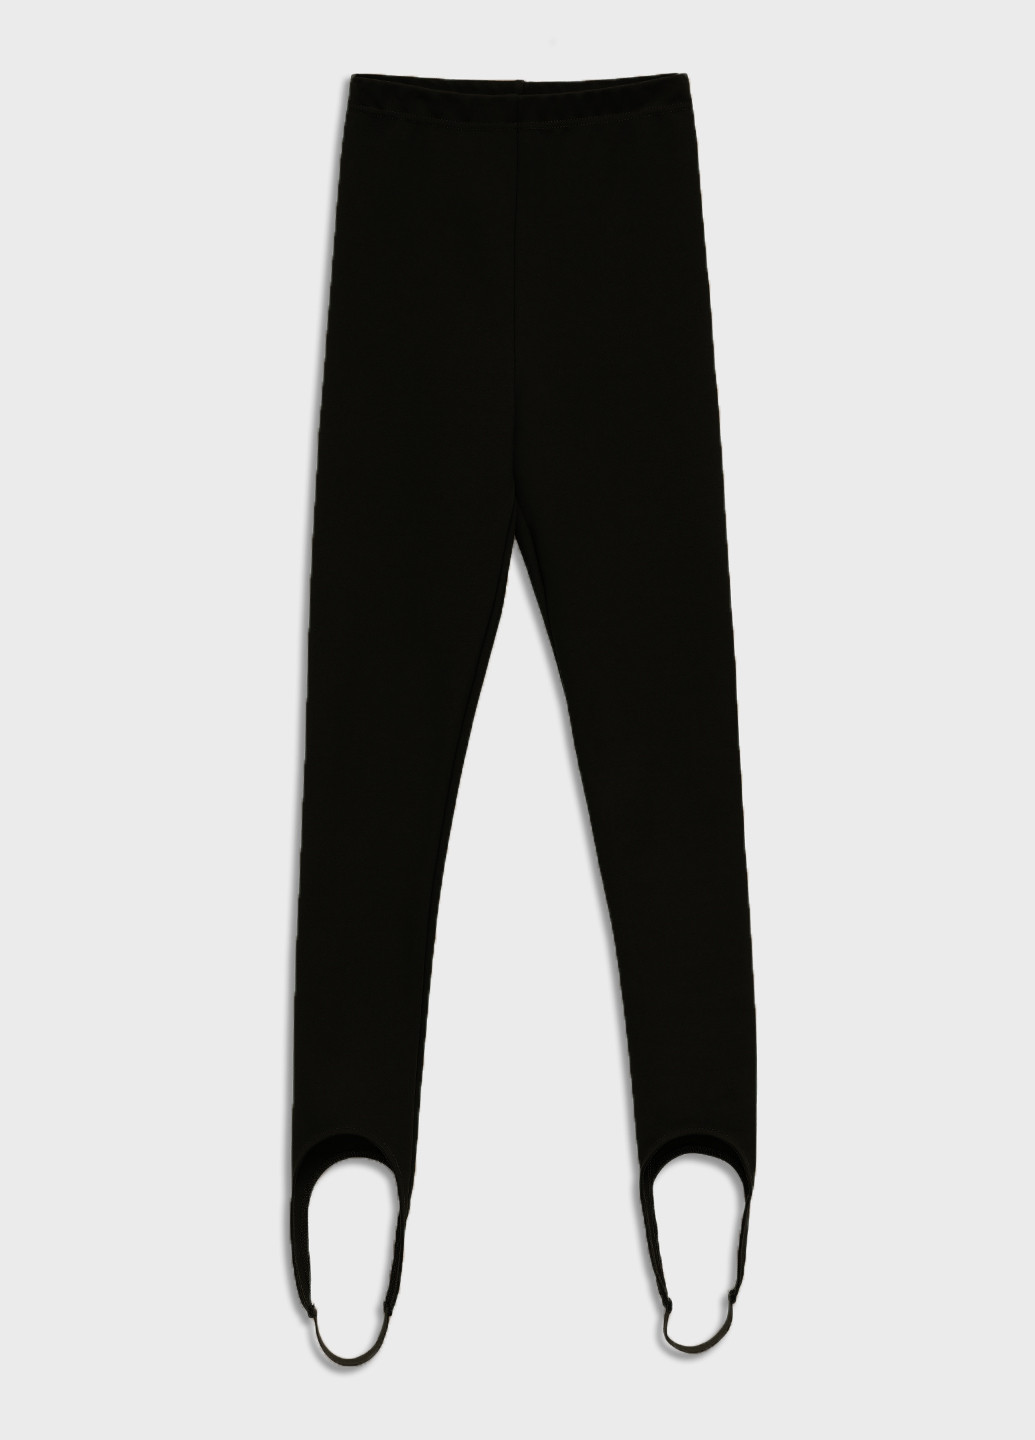 Черные демисезонные леггинсы женские на флисе со штрипками KASTA design